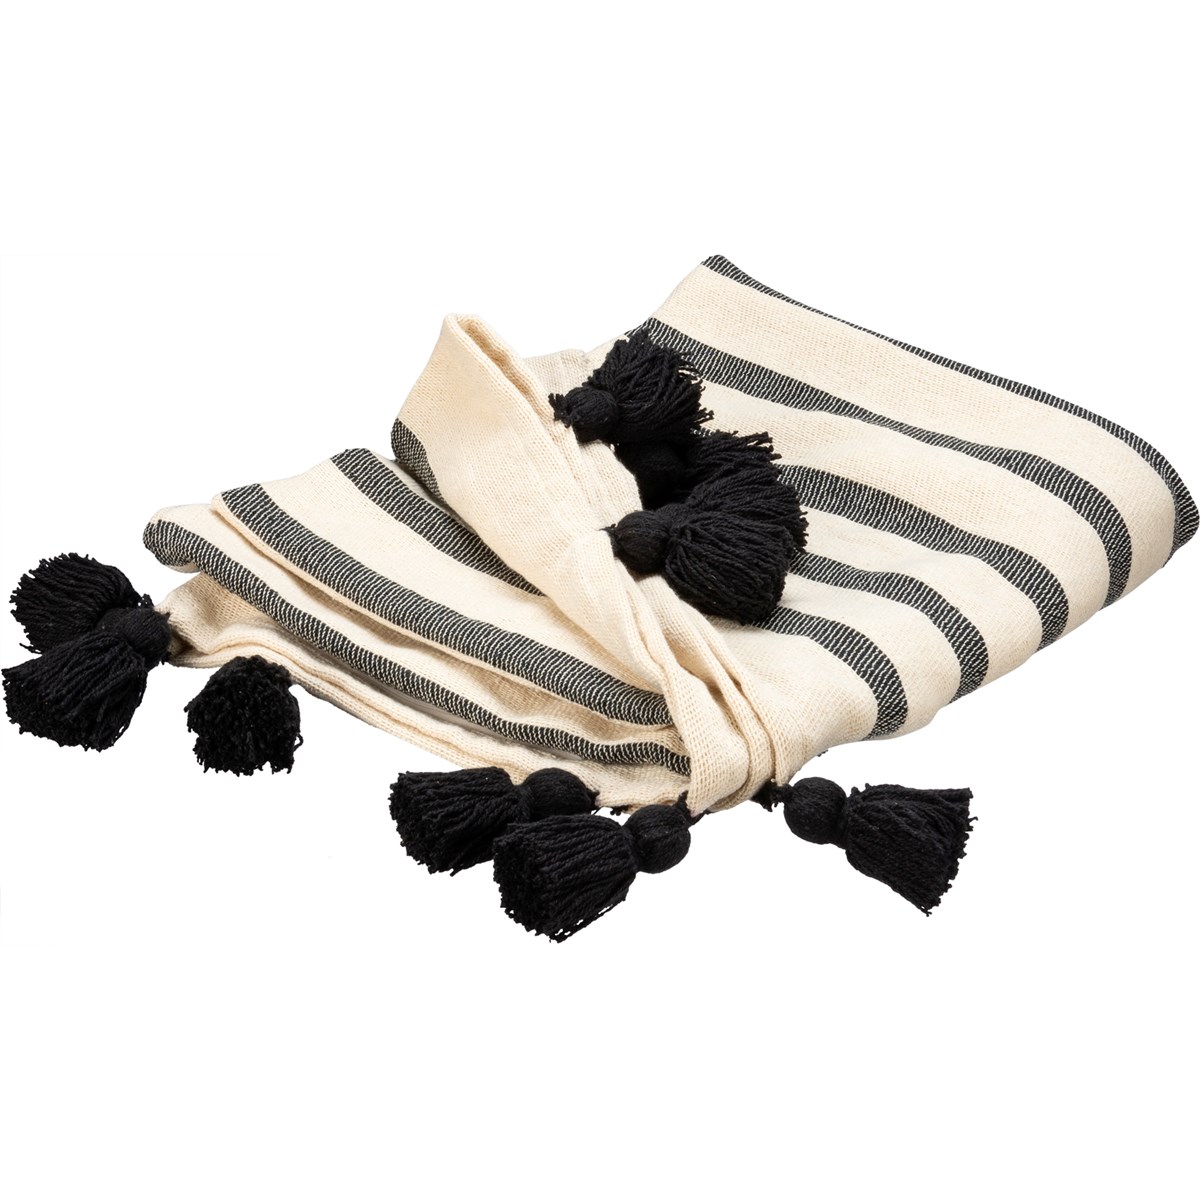 Black Tassels Throw Blanket - Cotton